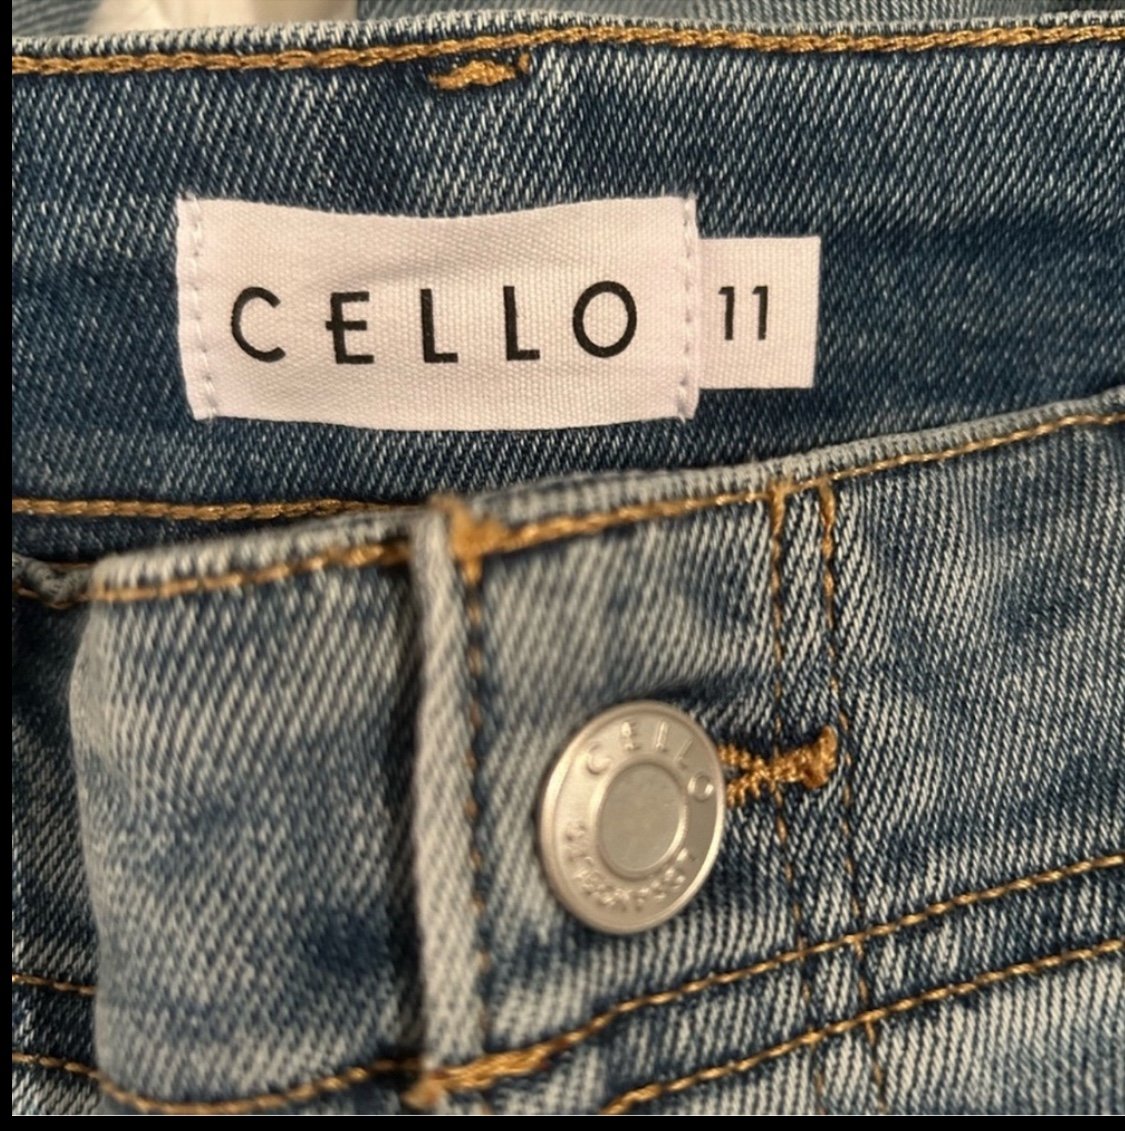 Cheap cello jeans ldo2w2jXg Cool